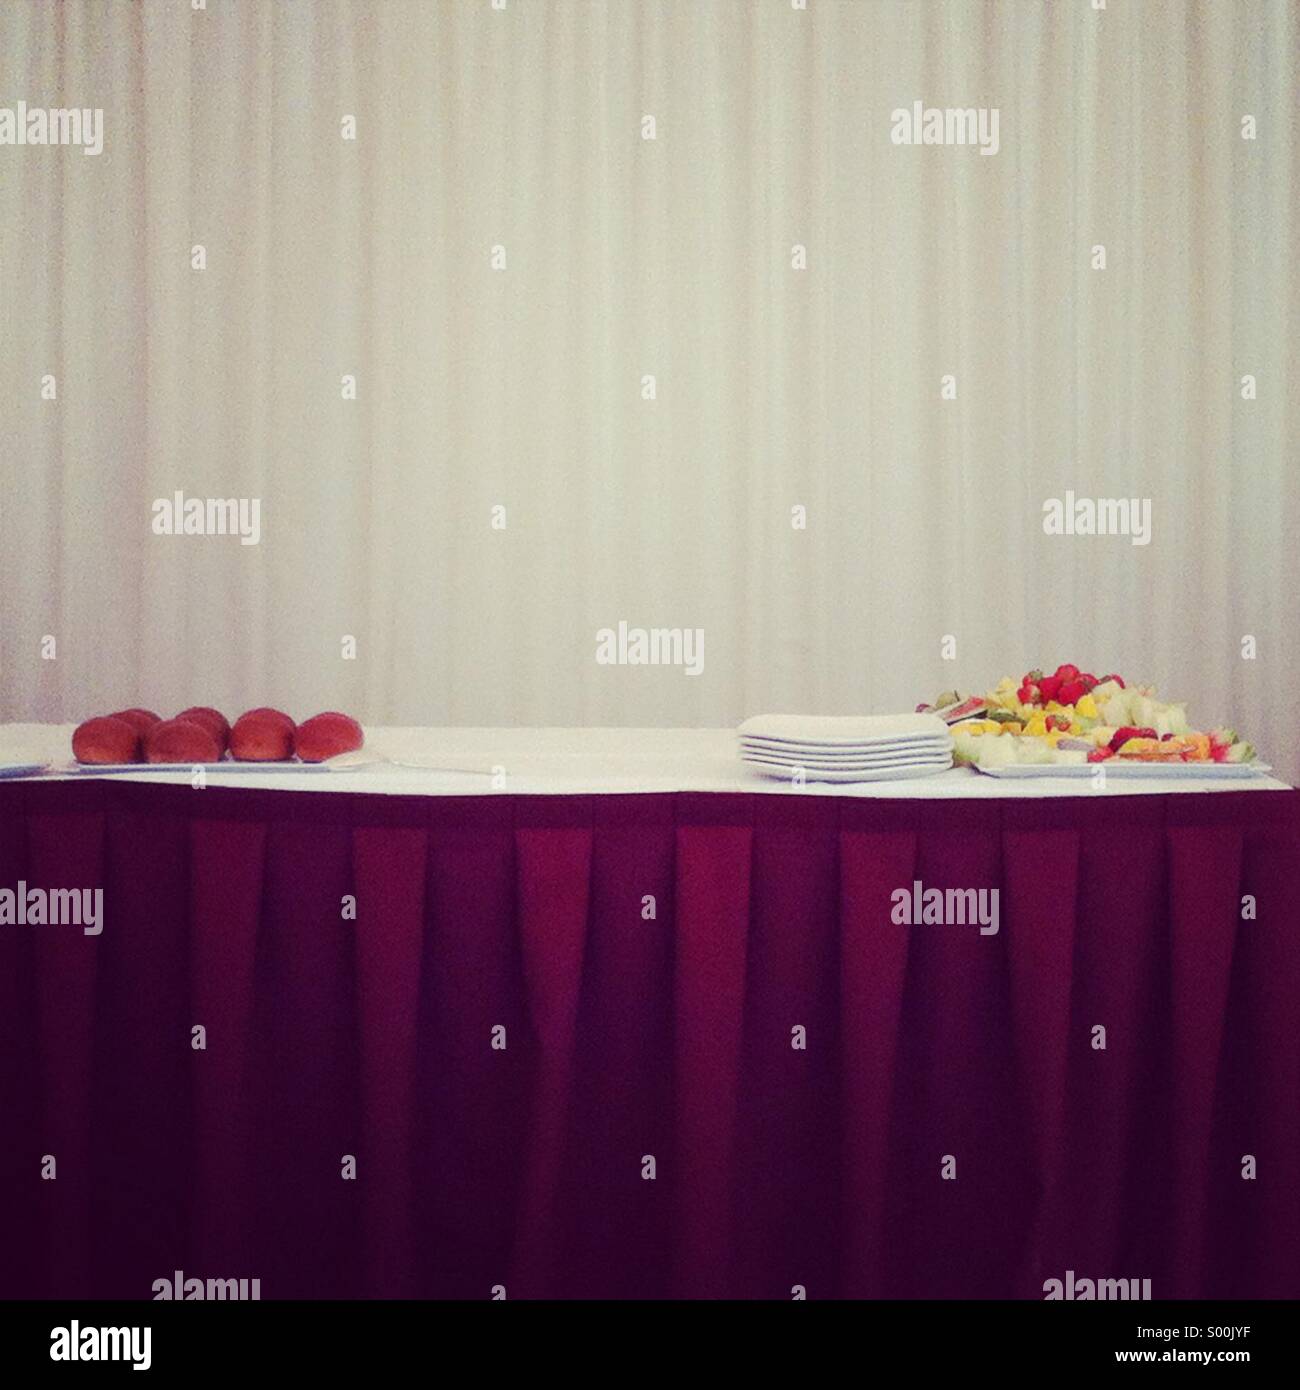 Stillleben mit Buffet-Tisch bei einer offiziellen Veranstaltung Stockfoto